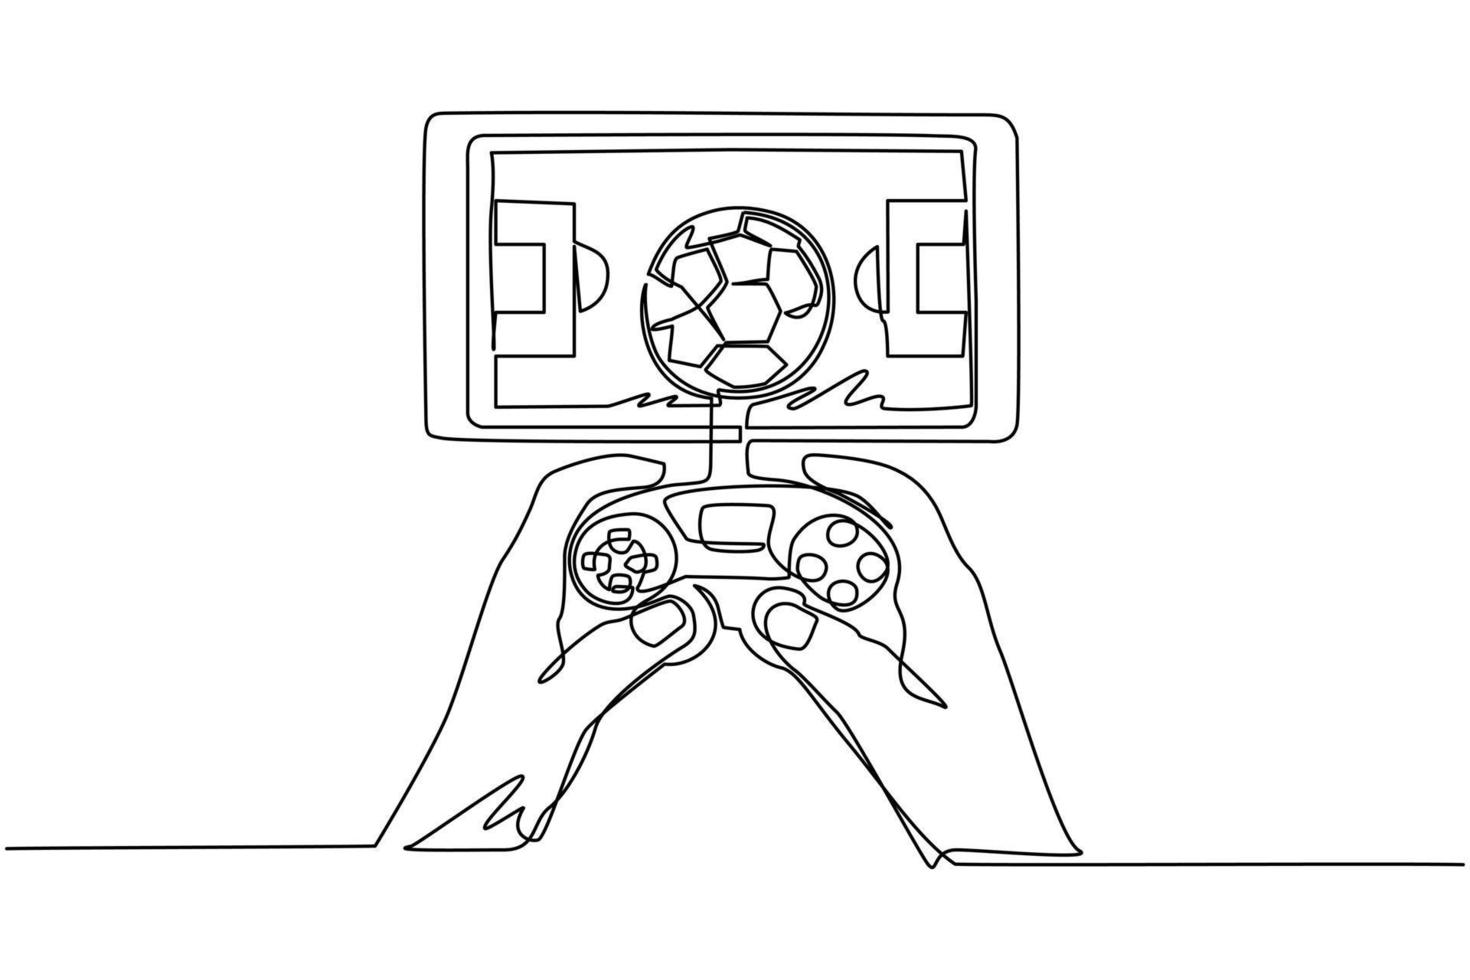 teléfono inteligente de dibujo de línea continua único conectado con gamepad y jugando juegos de fútbol. juegos de fútbol en línea. aplicaciones para teléfonos inteligentes. fútbol móvil. ilustración de vector de diseño de dibujo de una línea